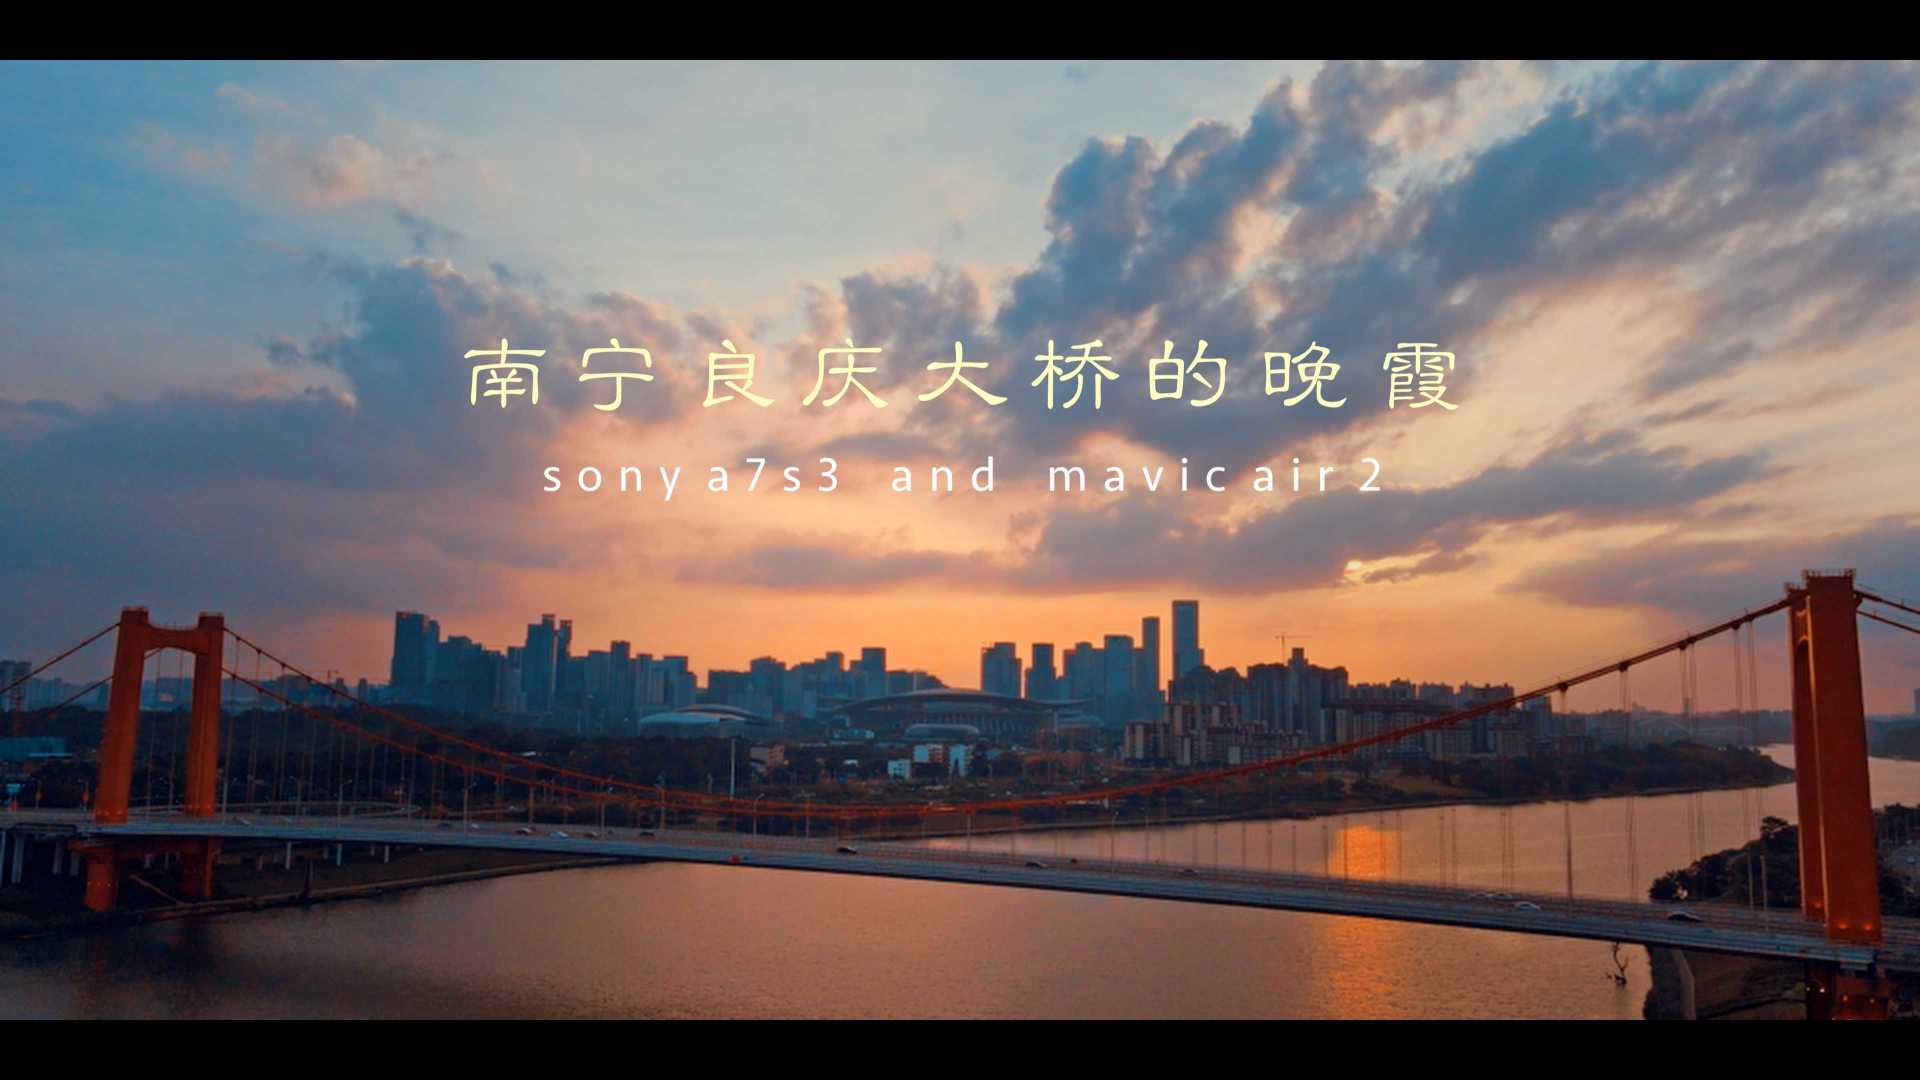 《南宁良庆大桥的晚霞》--索尼a7s3/mavic air 2 拍摄